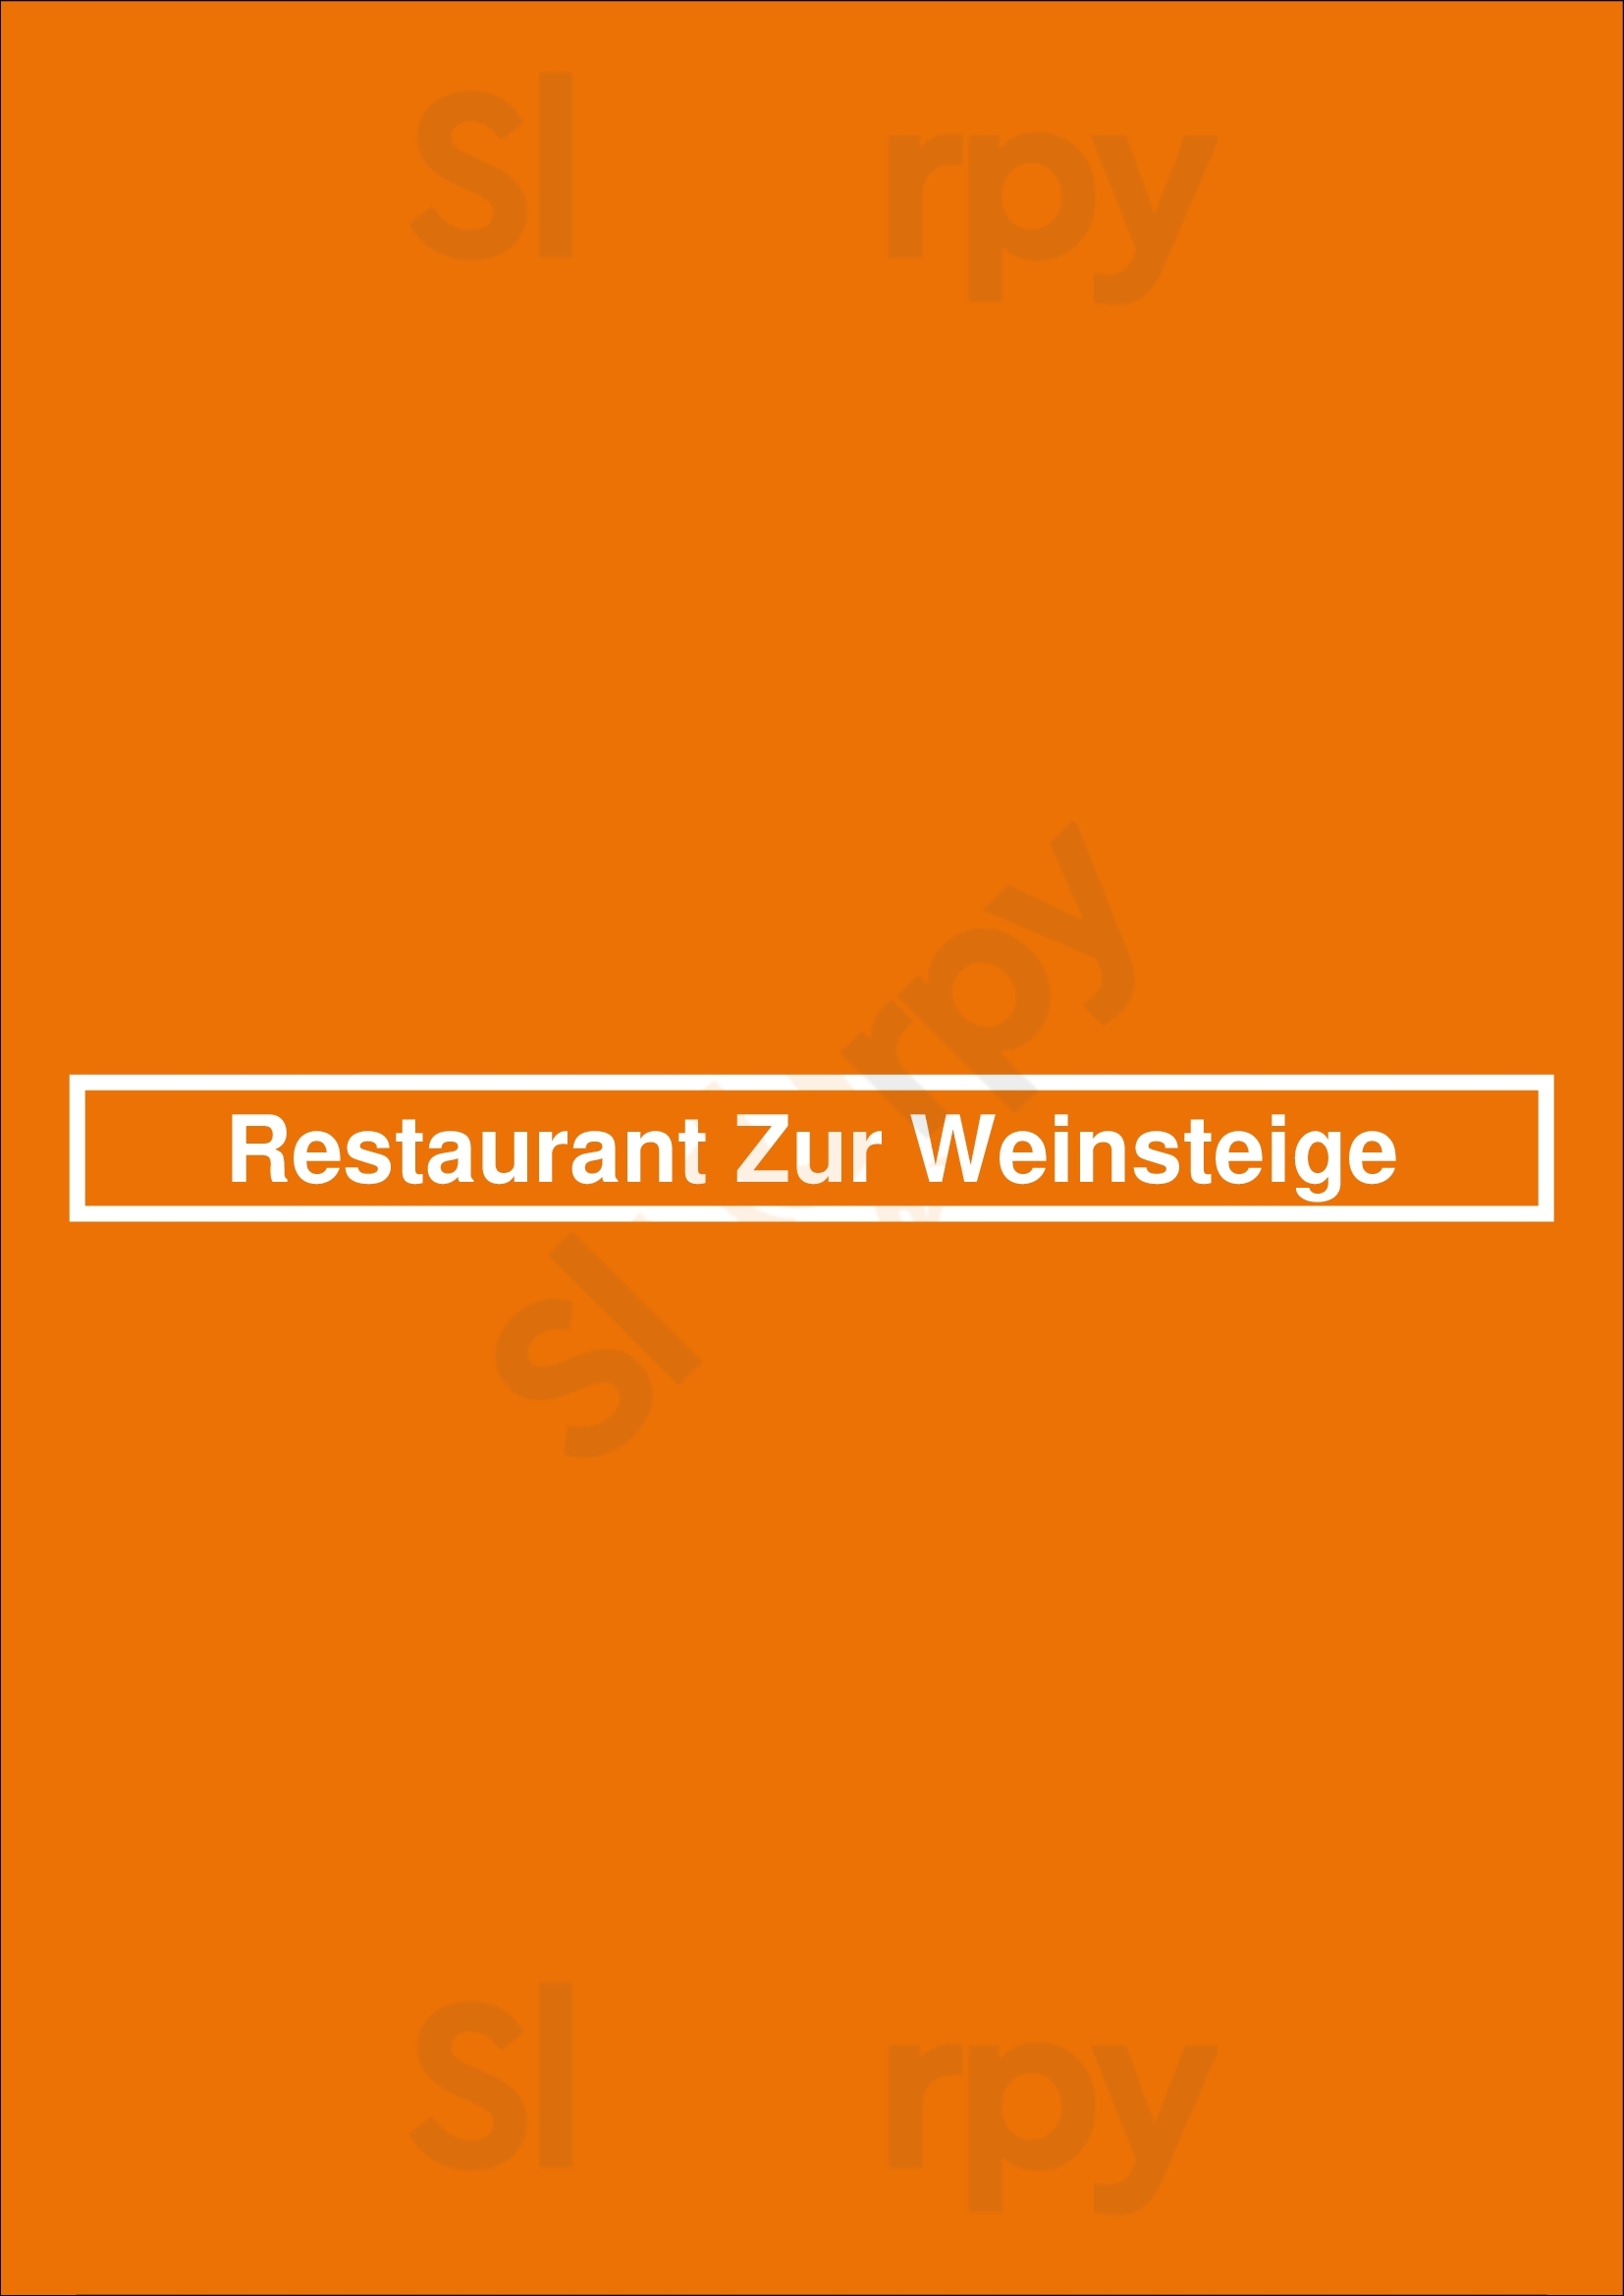 Restaurant Zur Weinsteige Stuttgart Menu - 1